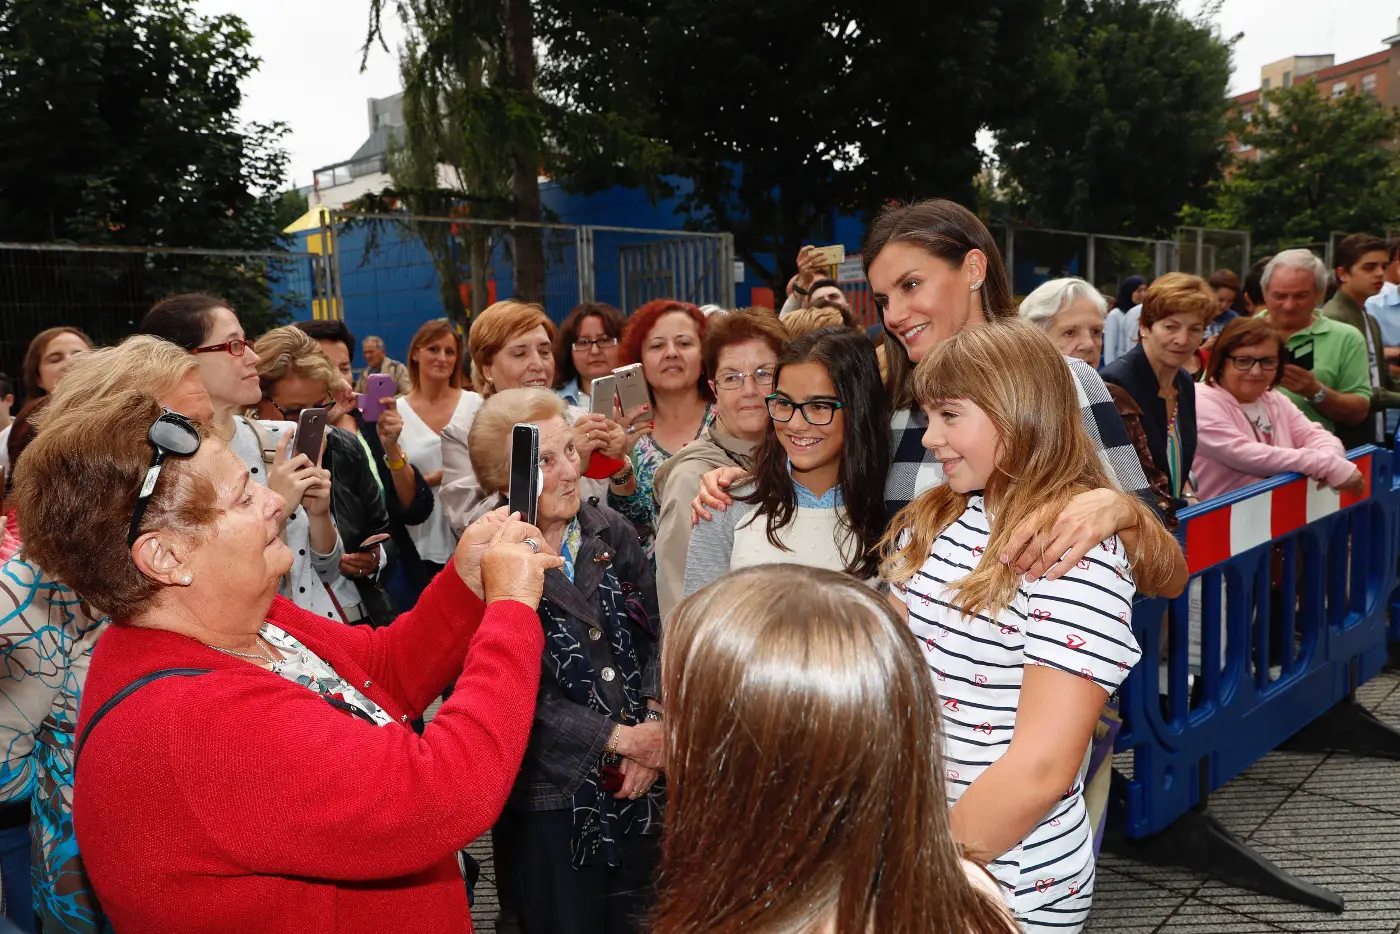 Queen Letizia opened Academic year